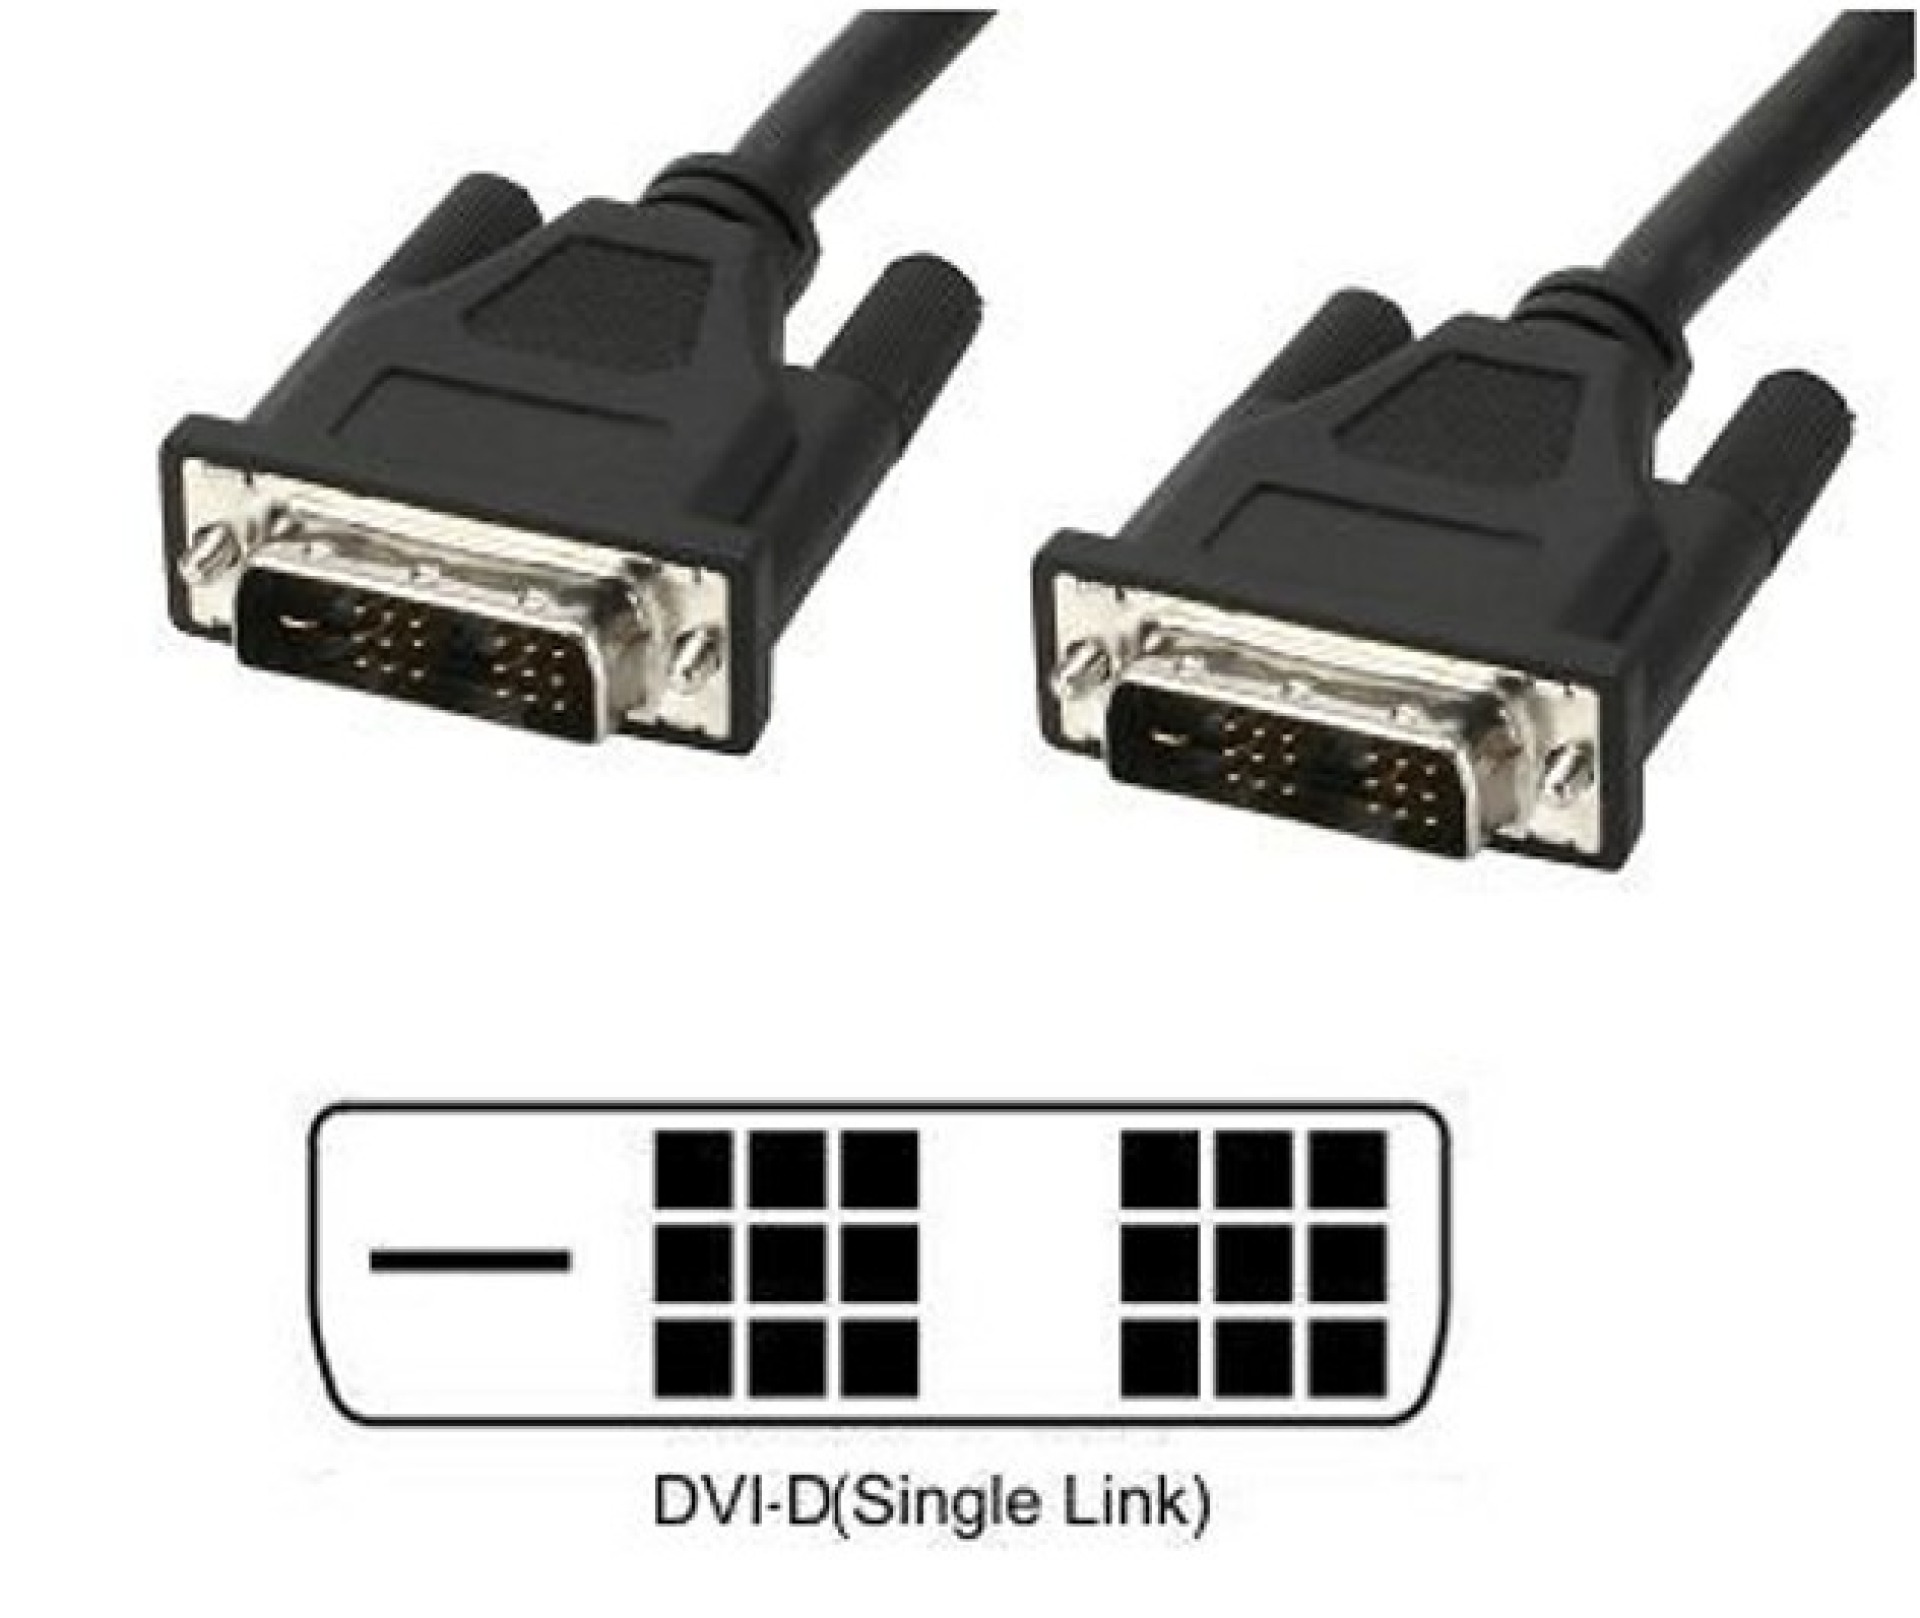 DVI-D Single-Link Anschlusskabel Stecker/Stecker, schwarz, 5 m